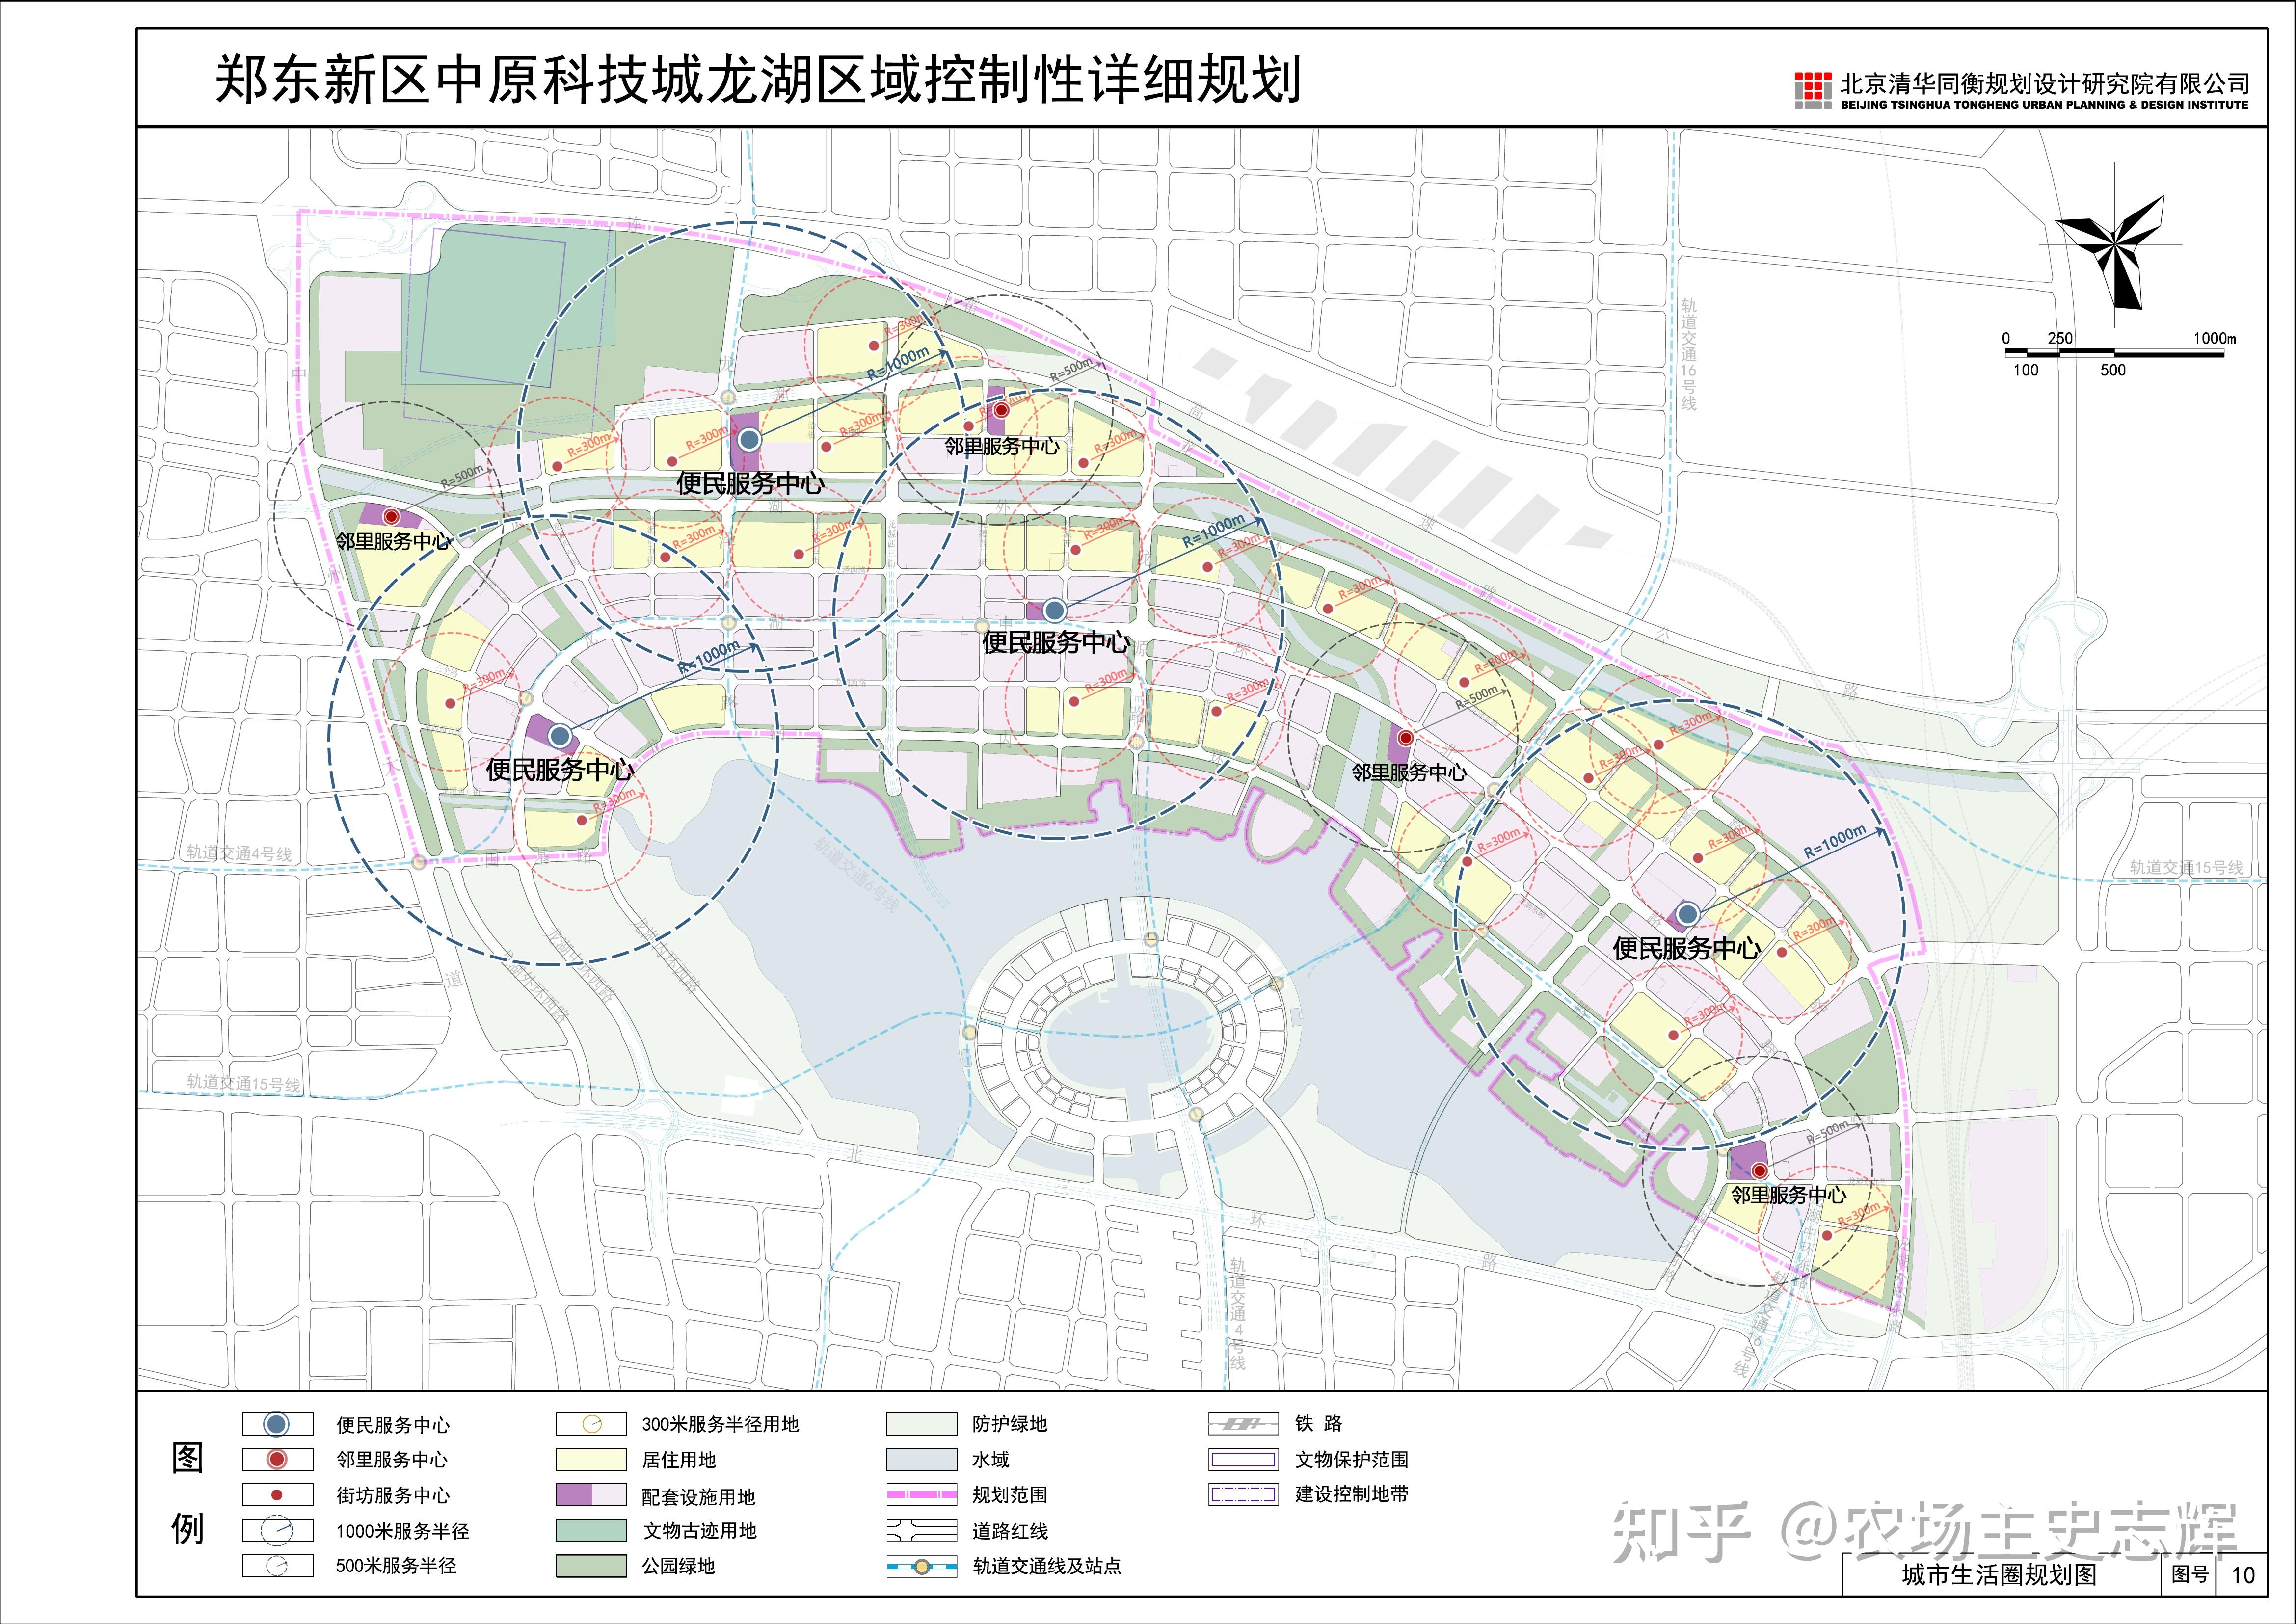 转发:郑东新区中原科技城龙湖区域规划展示